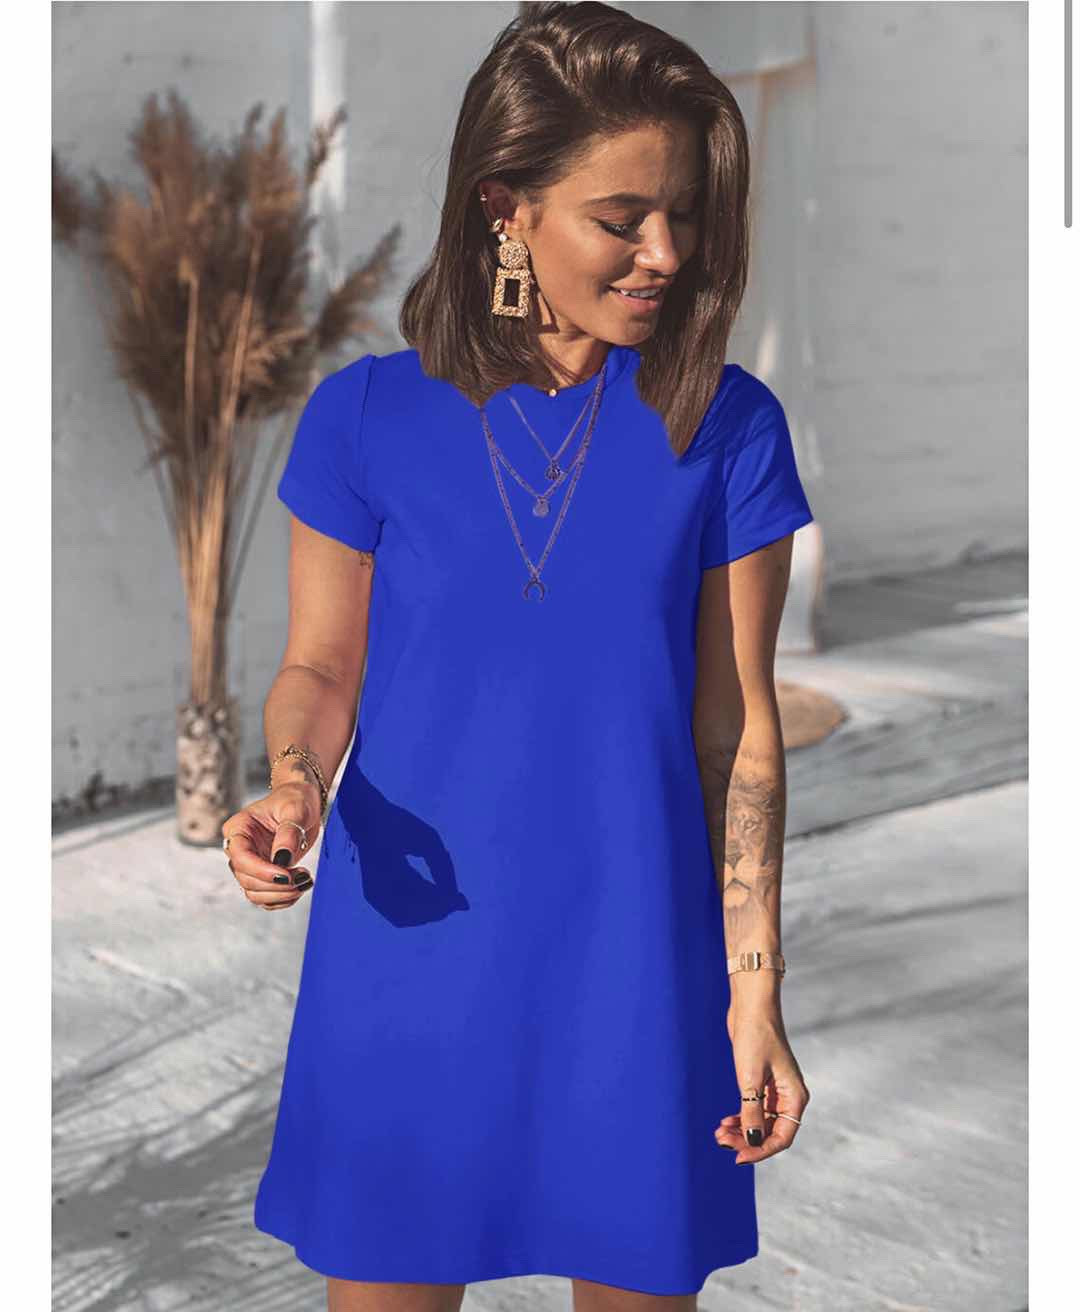 Γυναικείο μπλουζοφόρεμα 5166 μπλε